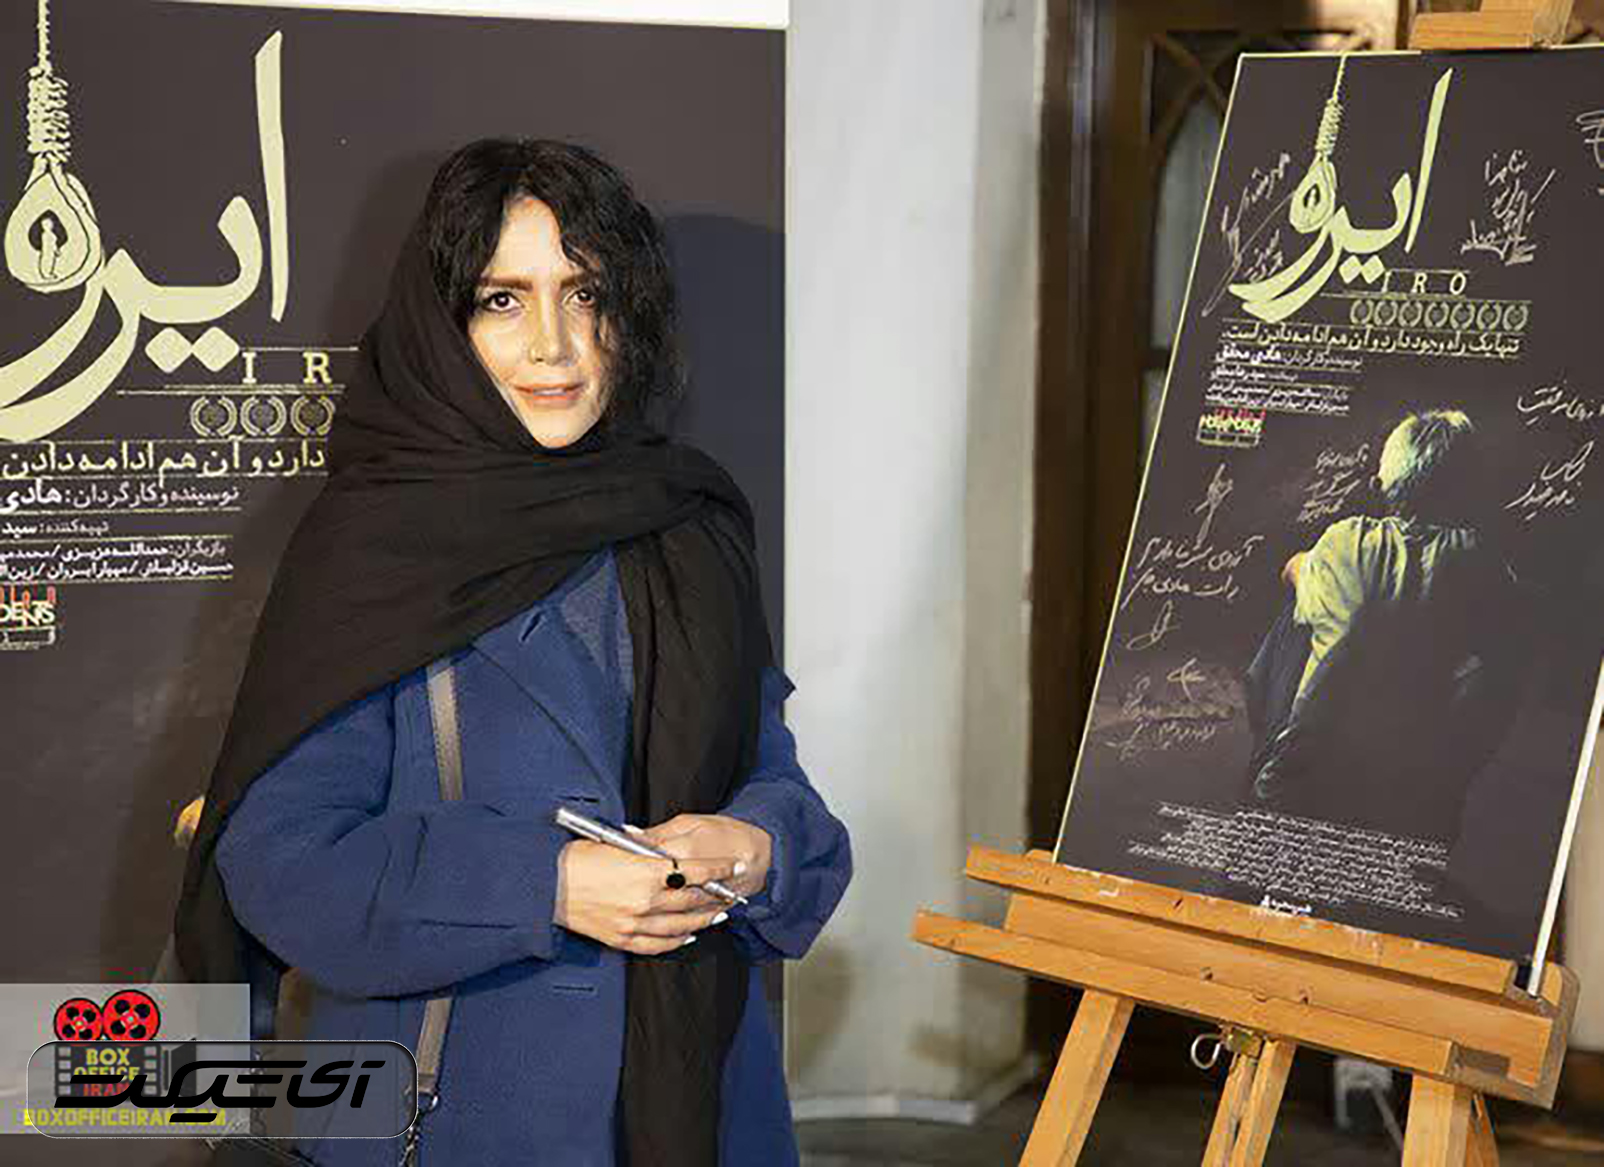 آی تیکت نیوز - نمایش فیلم ایرانی «ایرو» در نیویورک